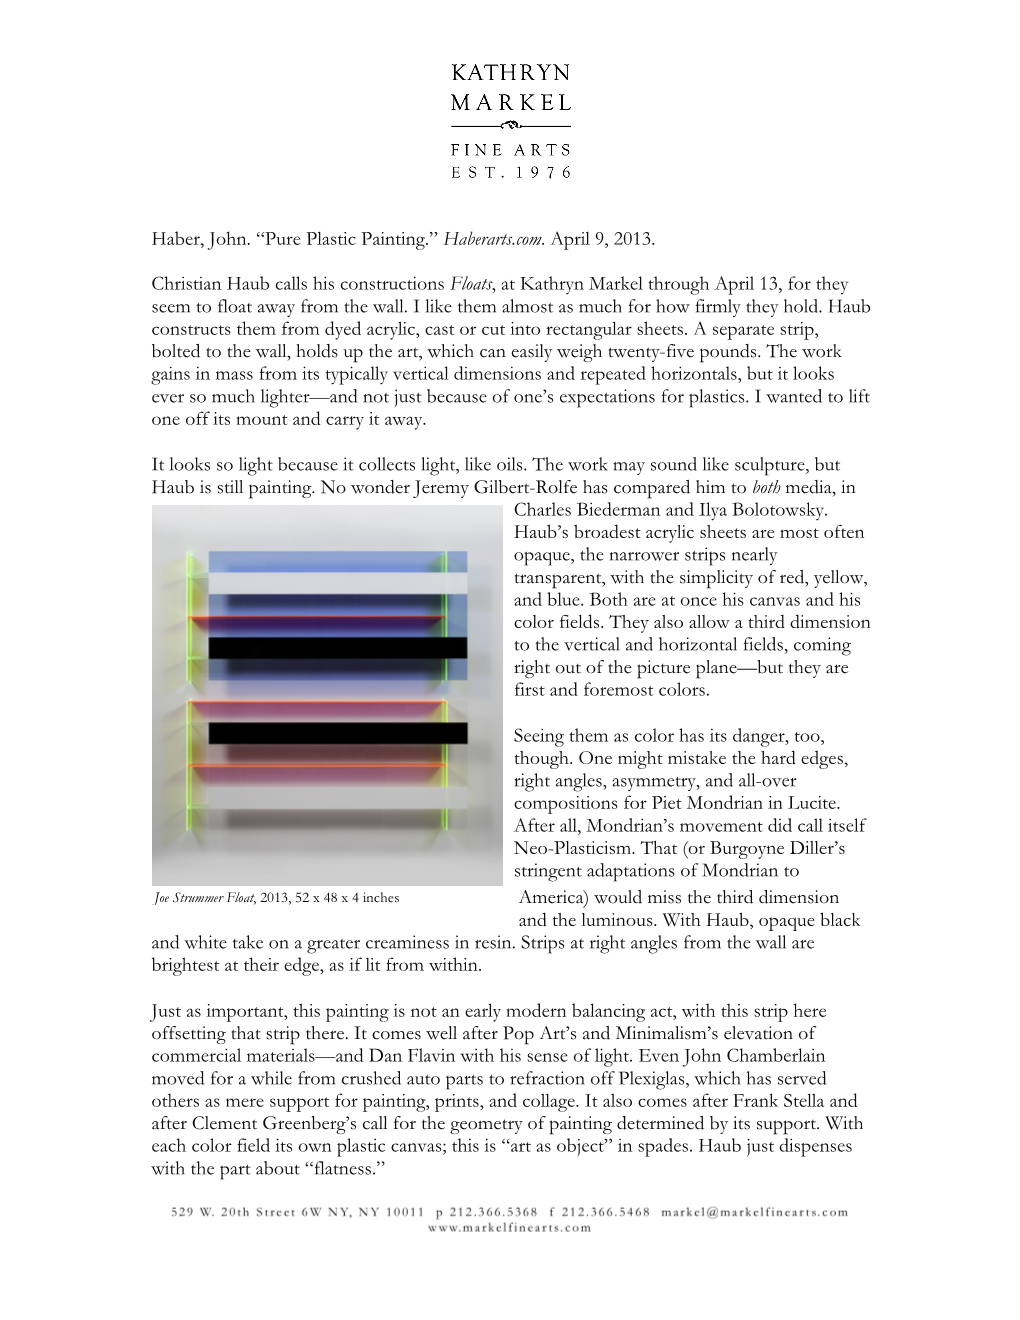 Haber, John. “Pure Plastic Painting.” Haberarts.Com. April 9, 2013